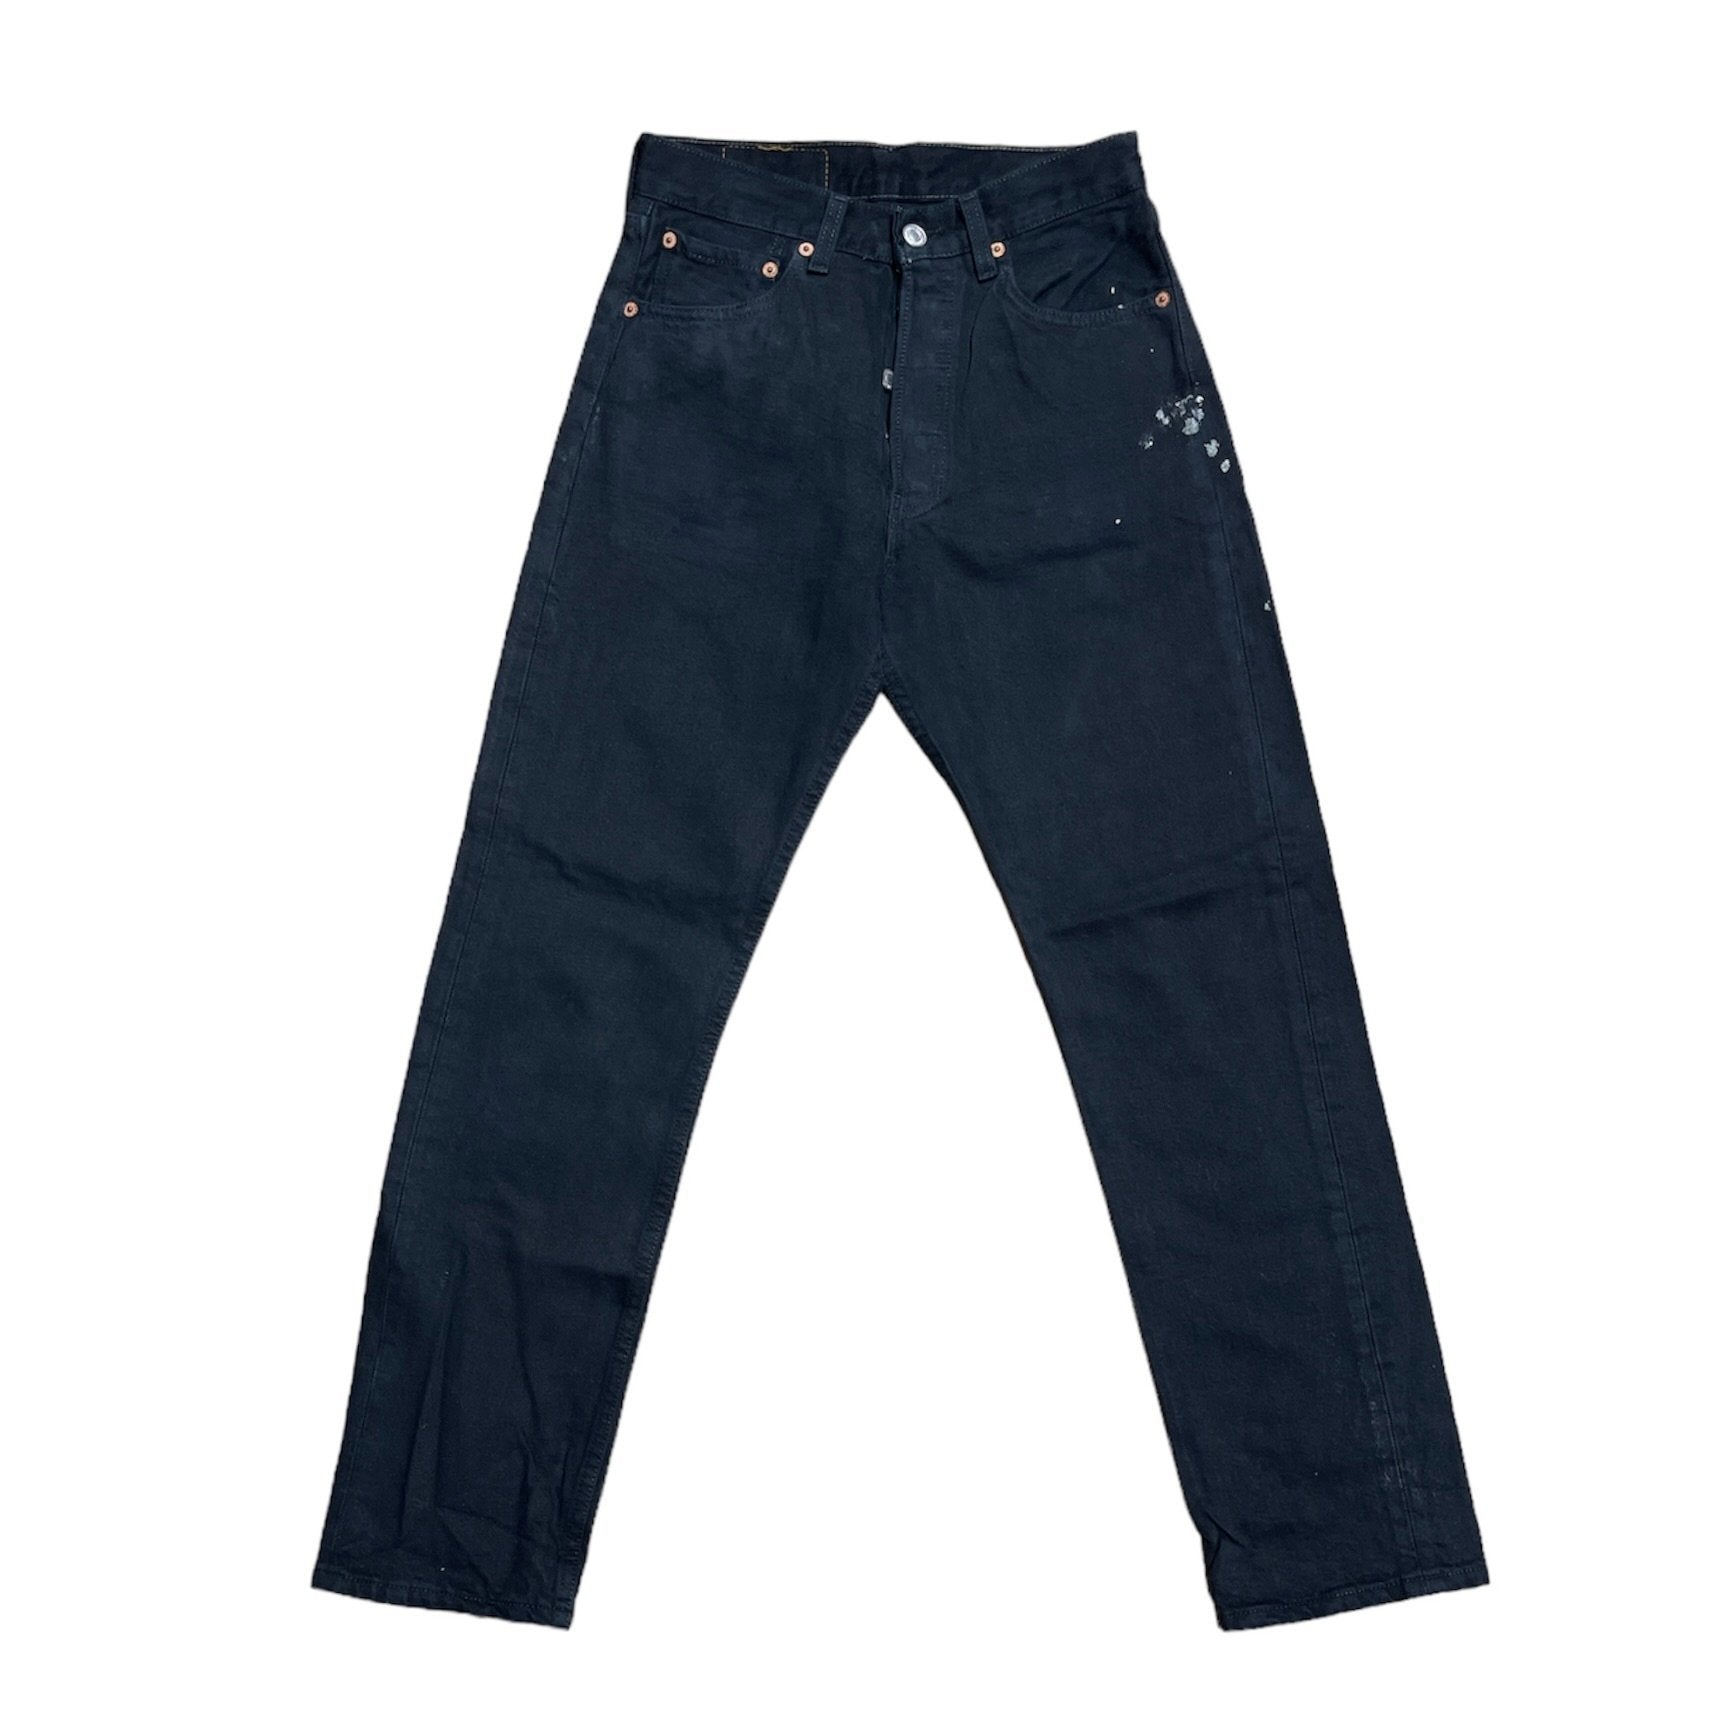 Vintage Levis 501 Black Jeans (W28/L30)